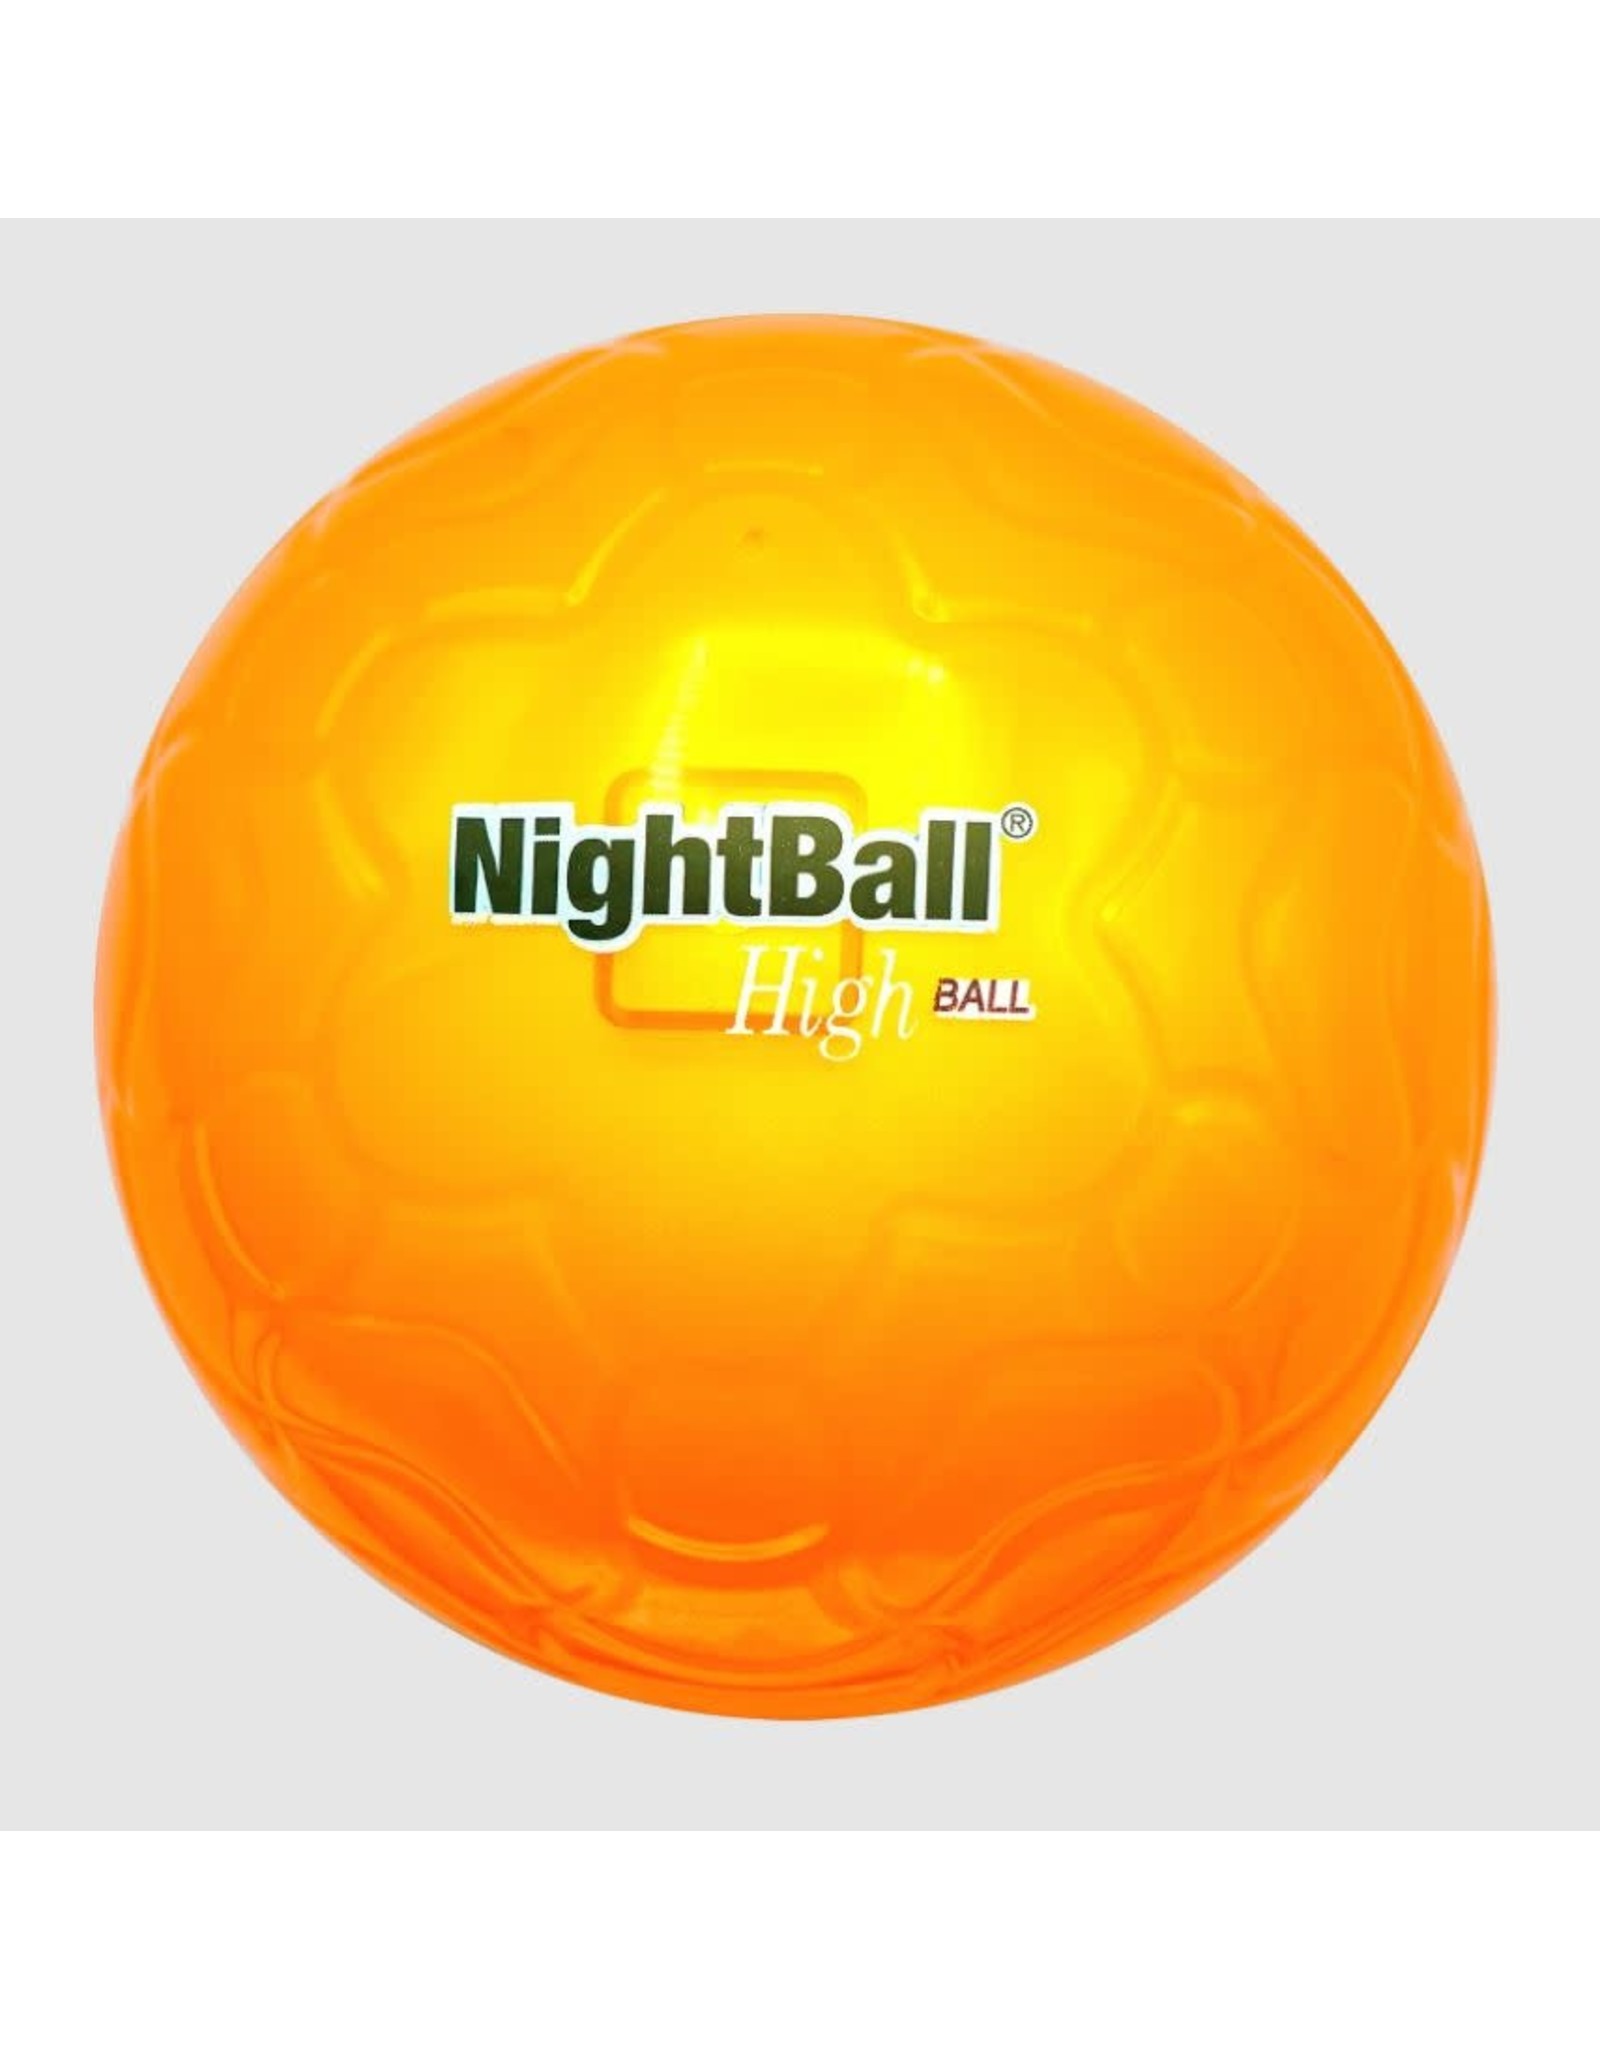 NightBall HighBall